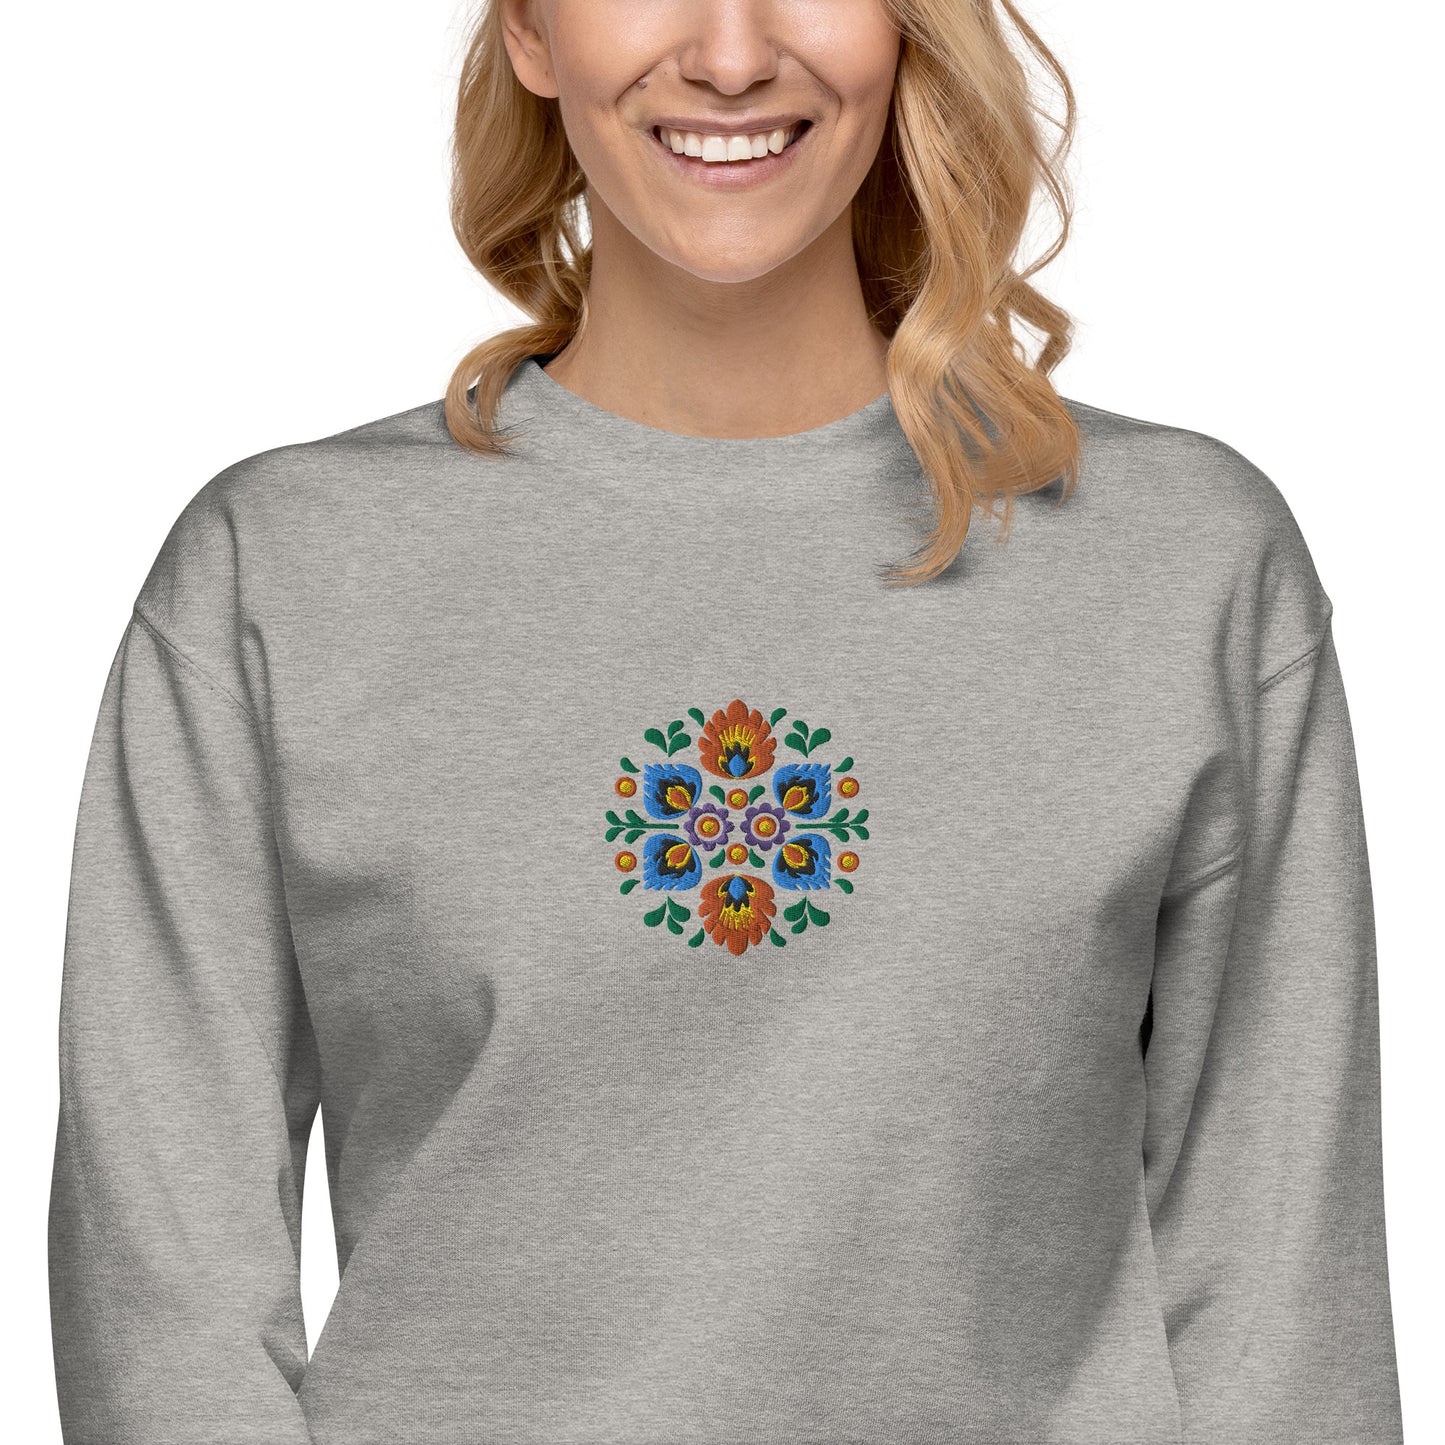 Polish Wycinanki Sweatshirt - Embroidered - The Global Wanderer